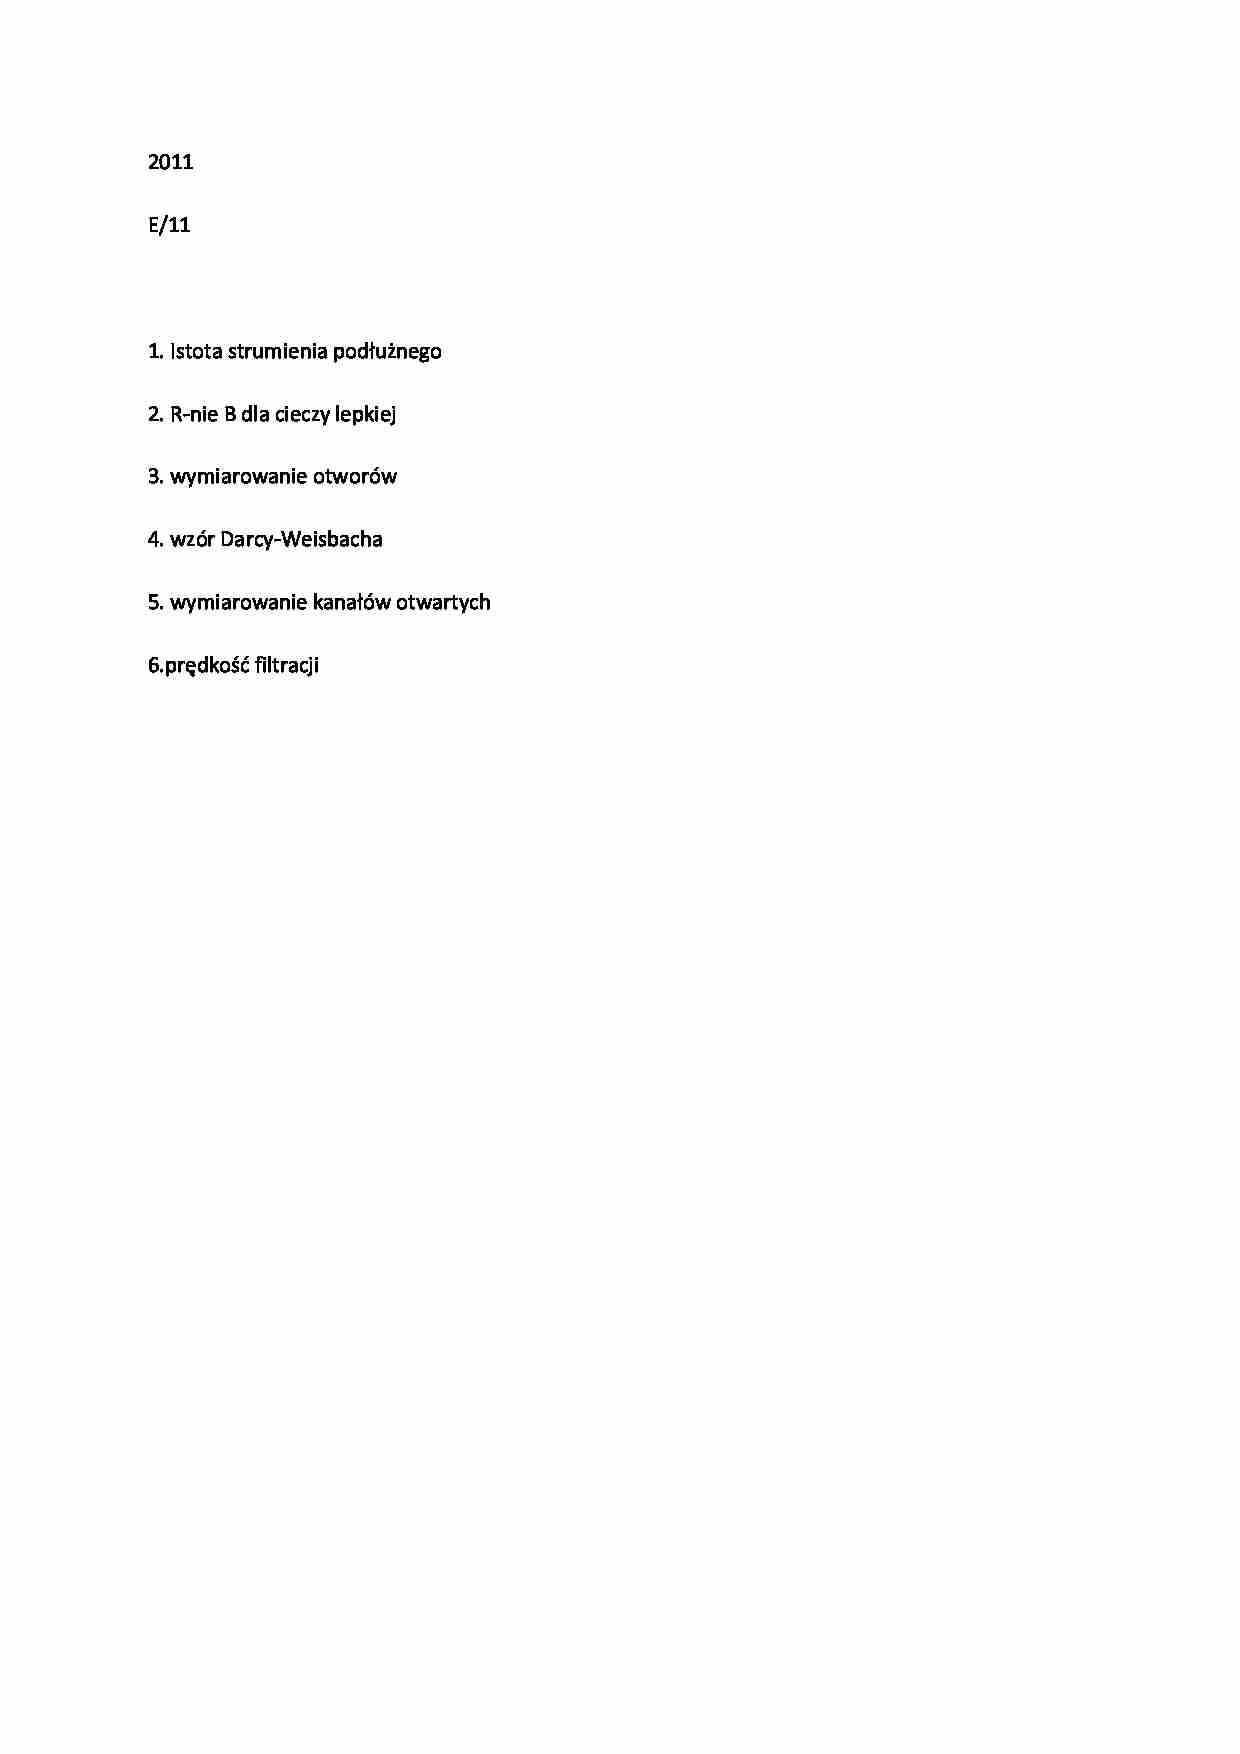 Hydraulika-egzamin z 2011 E11 - strona 1